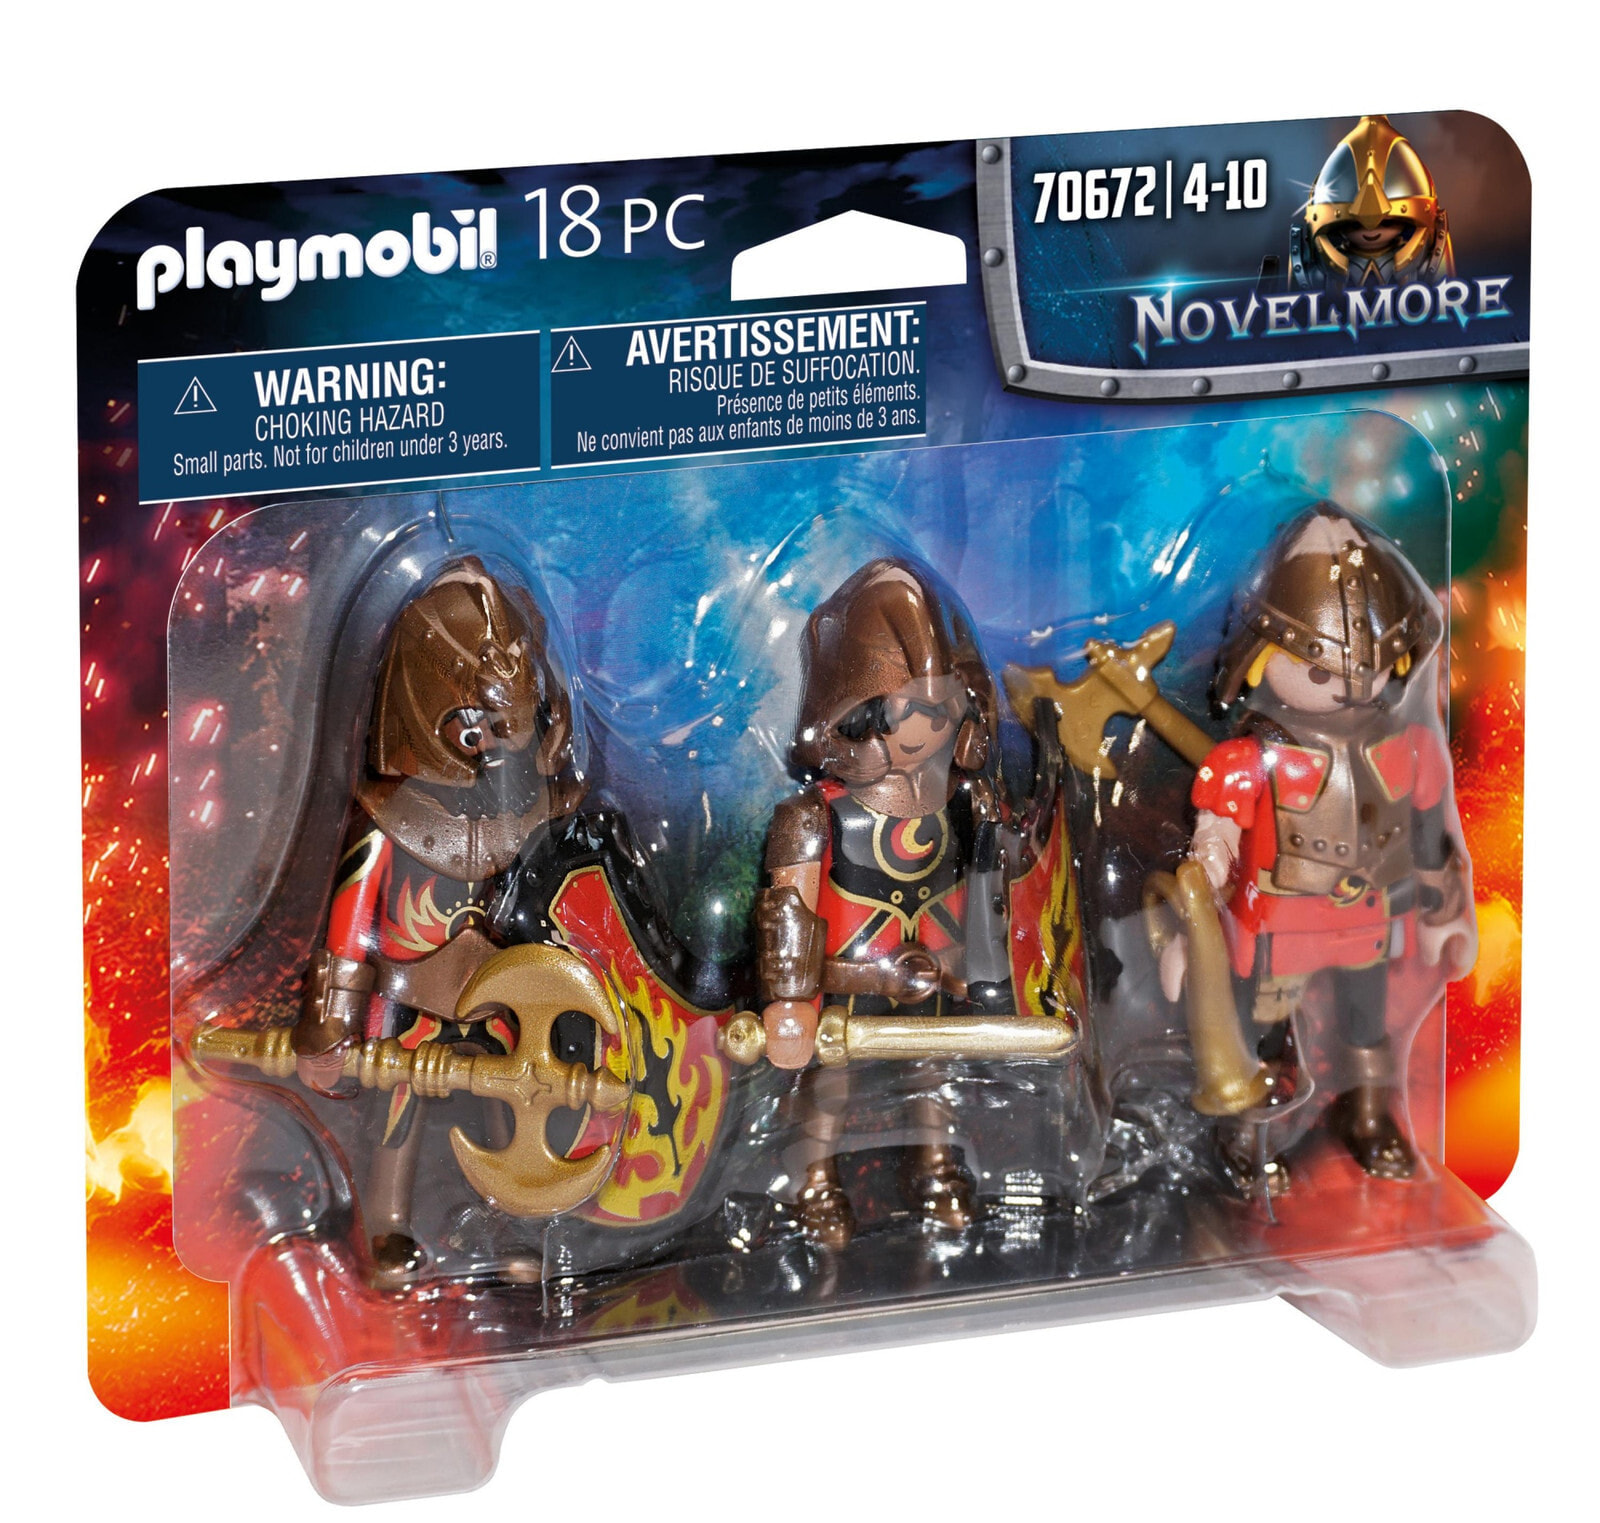 Playmobil Novelmore 70672 Набор воинов Бернхэма